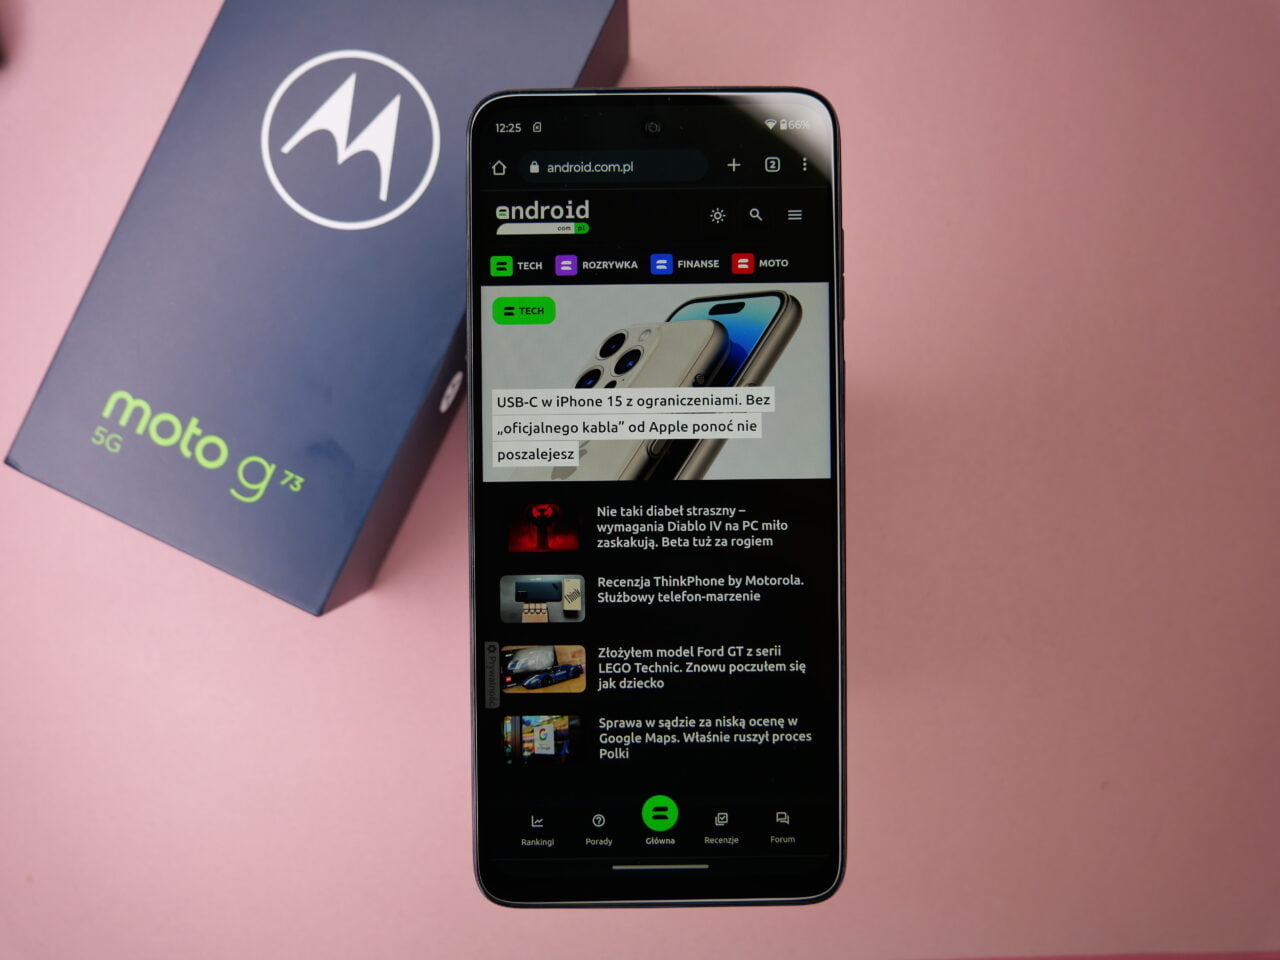 Smartfon Motorola Moto g73 5G leżący na różowym tle obok pudełka z logo Motorola, wyświetlający stronę internetową z artykułami.